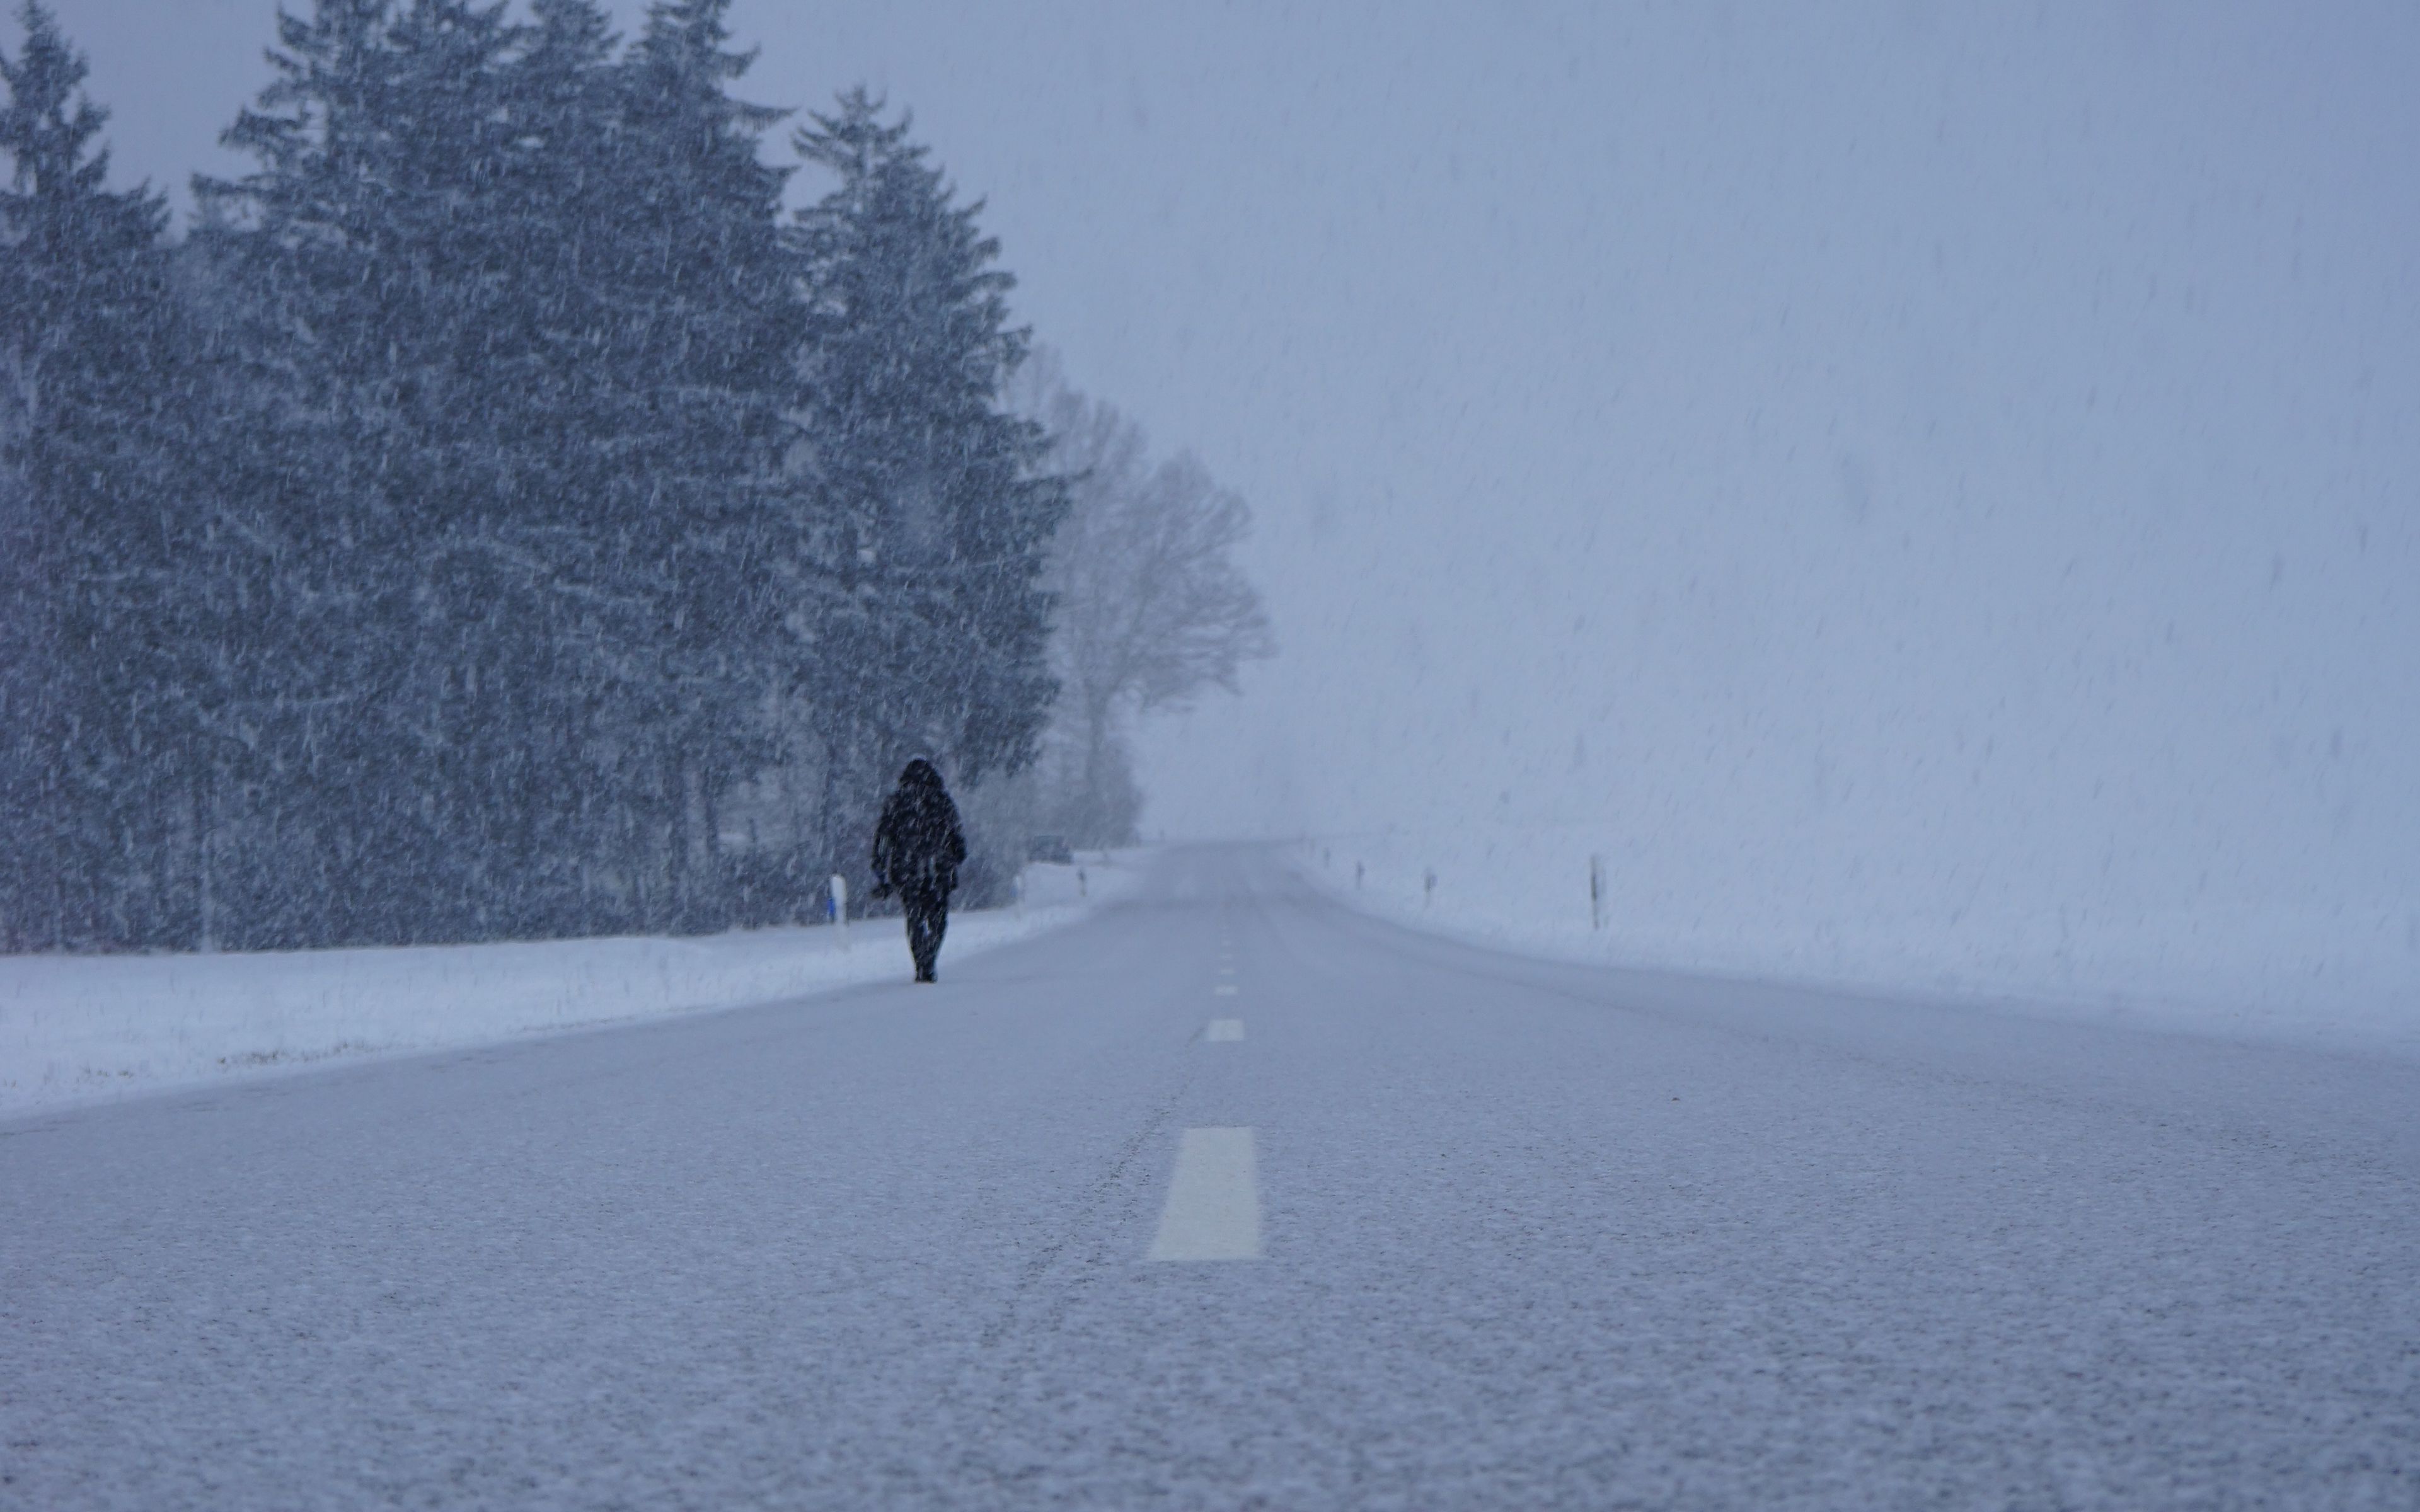 Раз на метель. Метель. Зимняя дорога метель. Человек идущий по дороге зимой. Туман зимой на трассе.